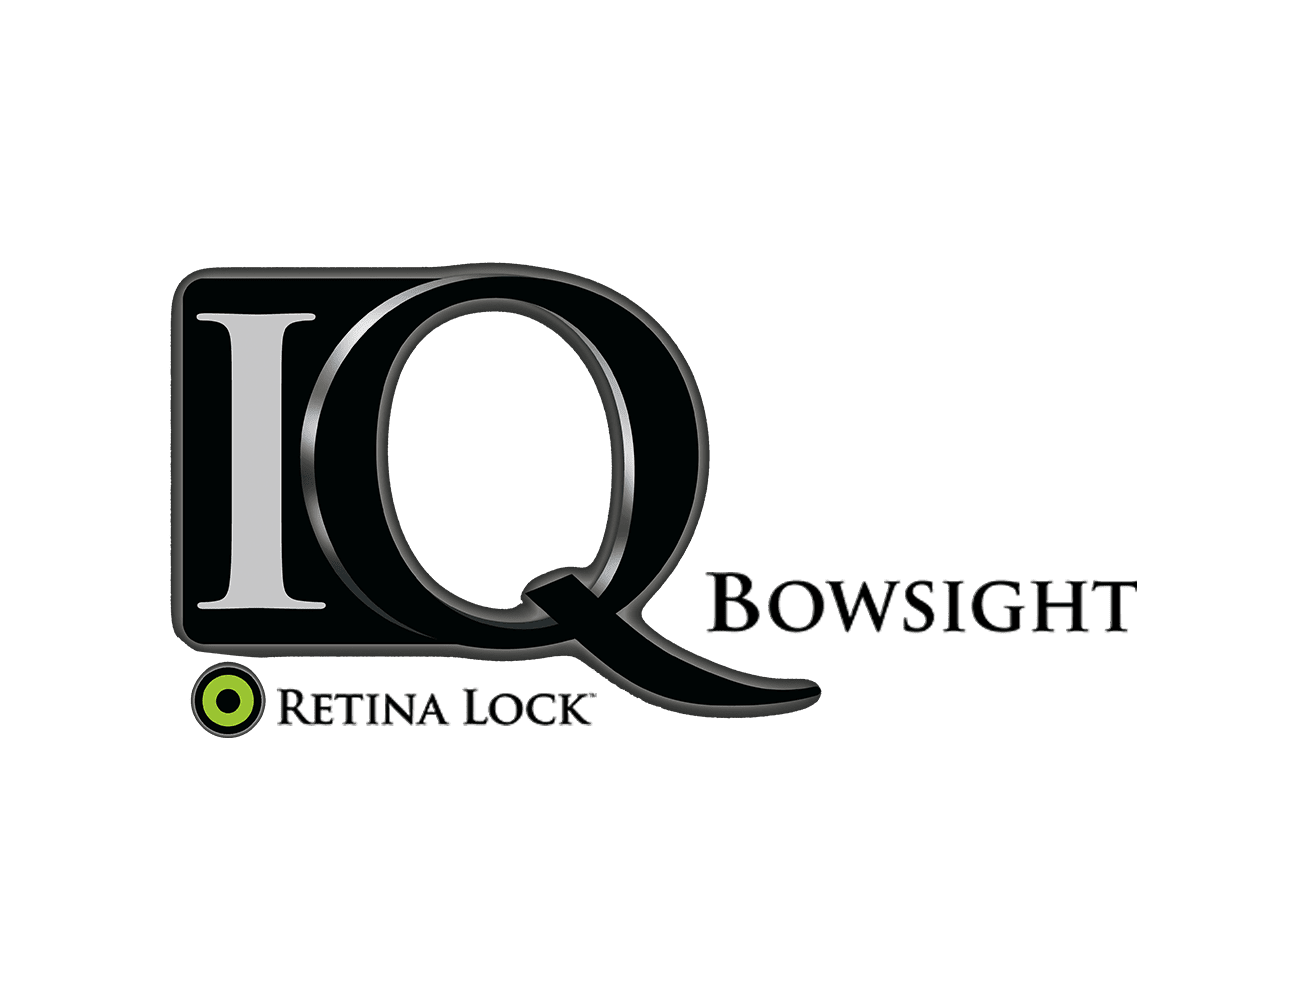 IQ Bowsights logo